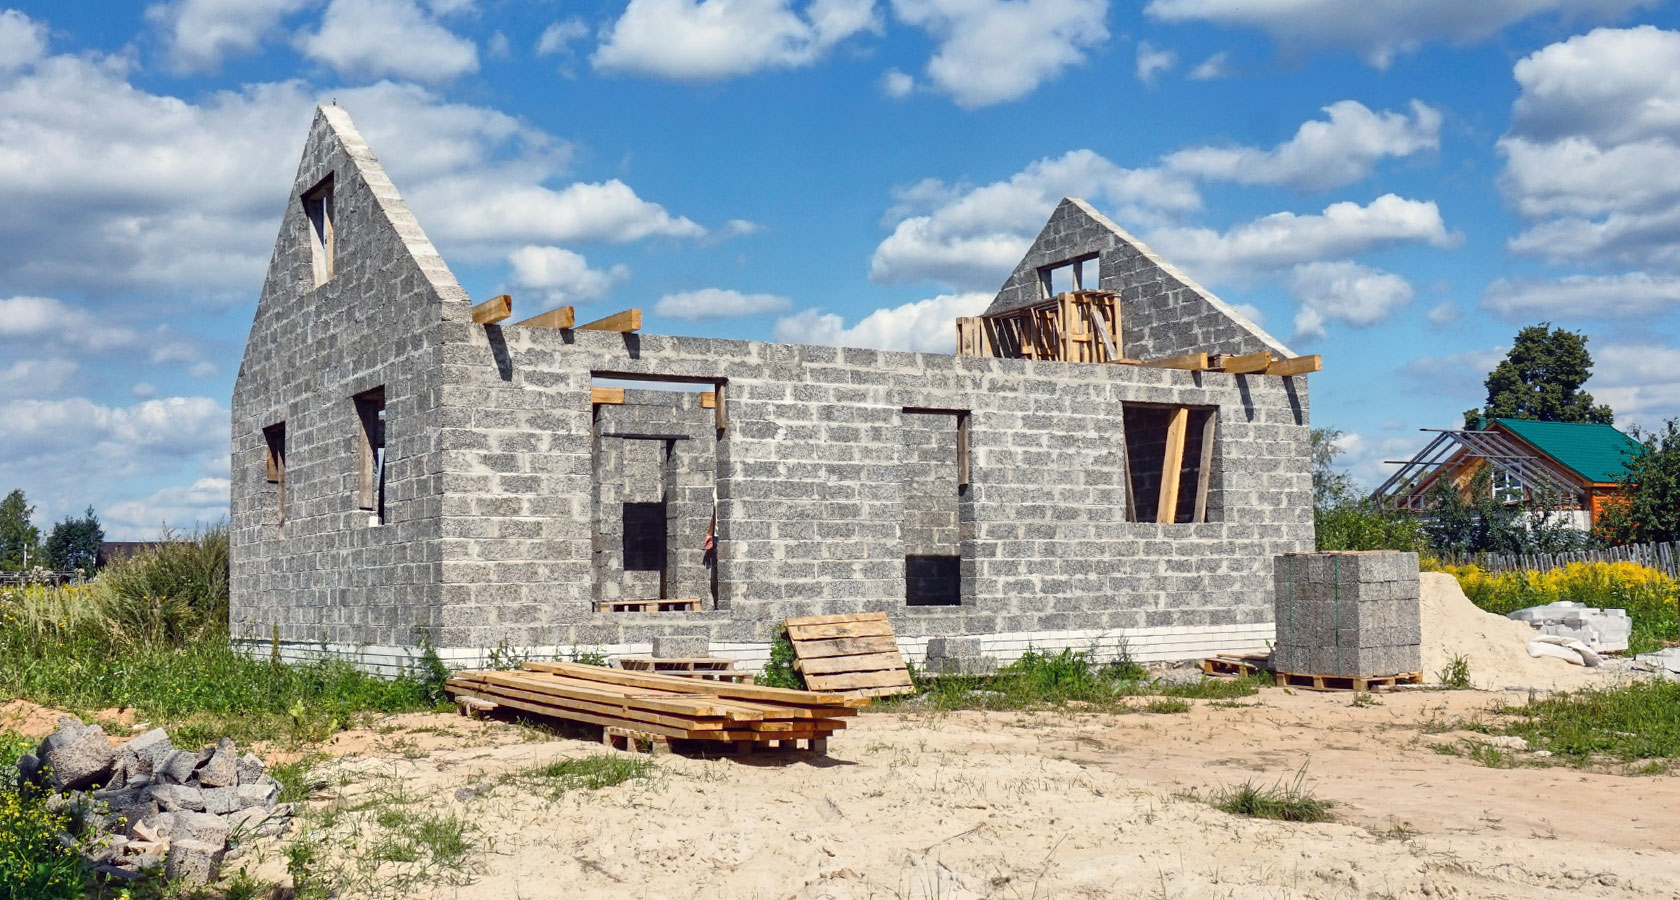 Материалы для строительства дома: что лучше и дешевле?